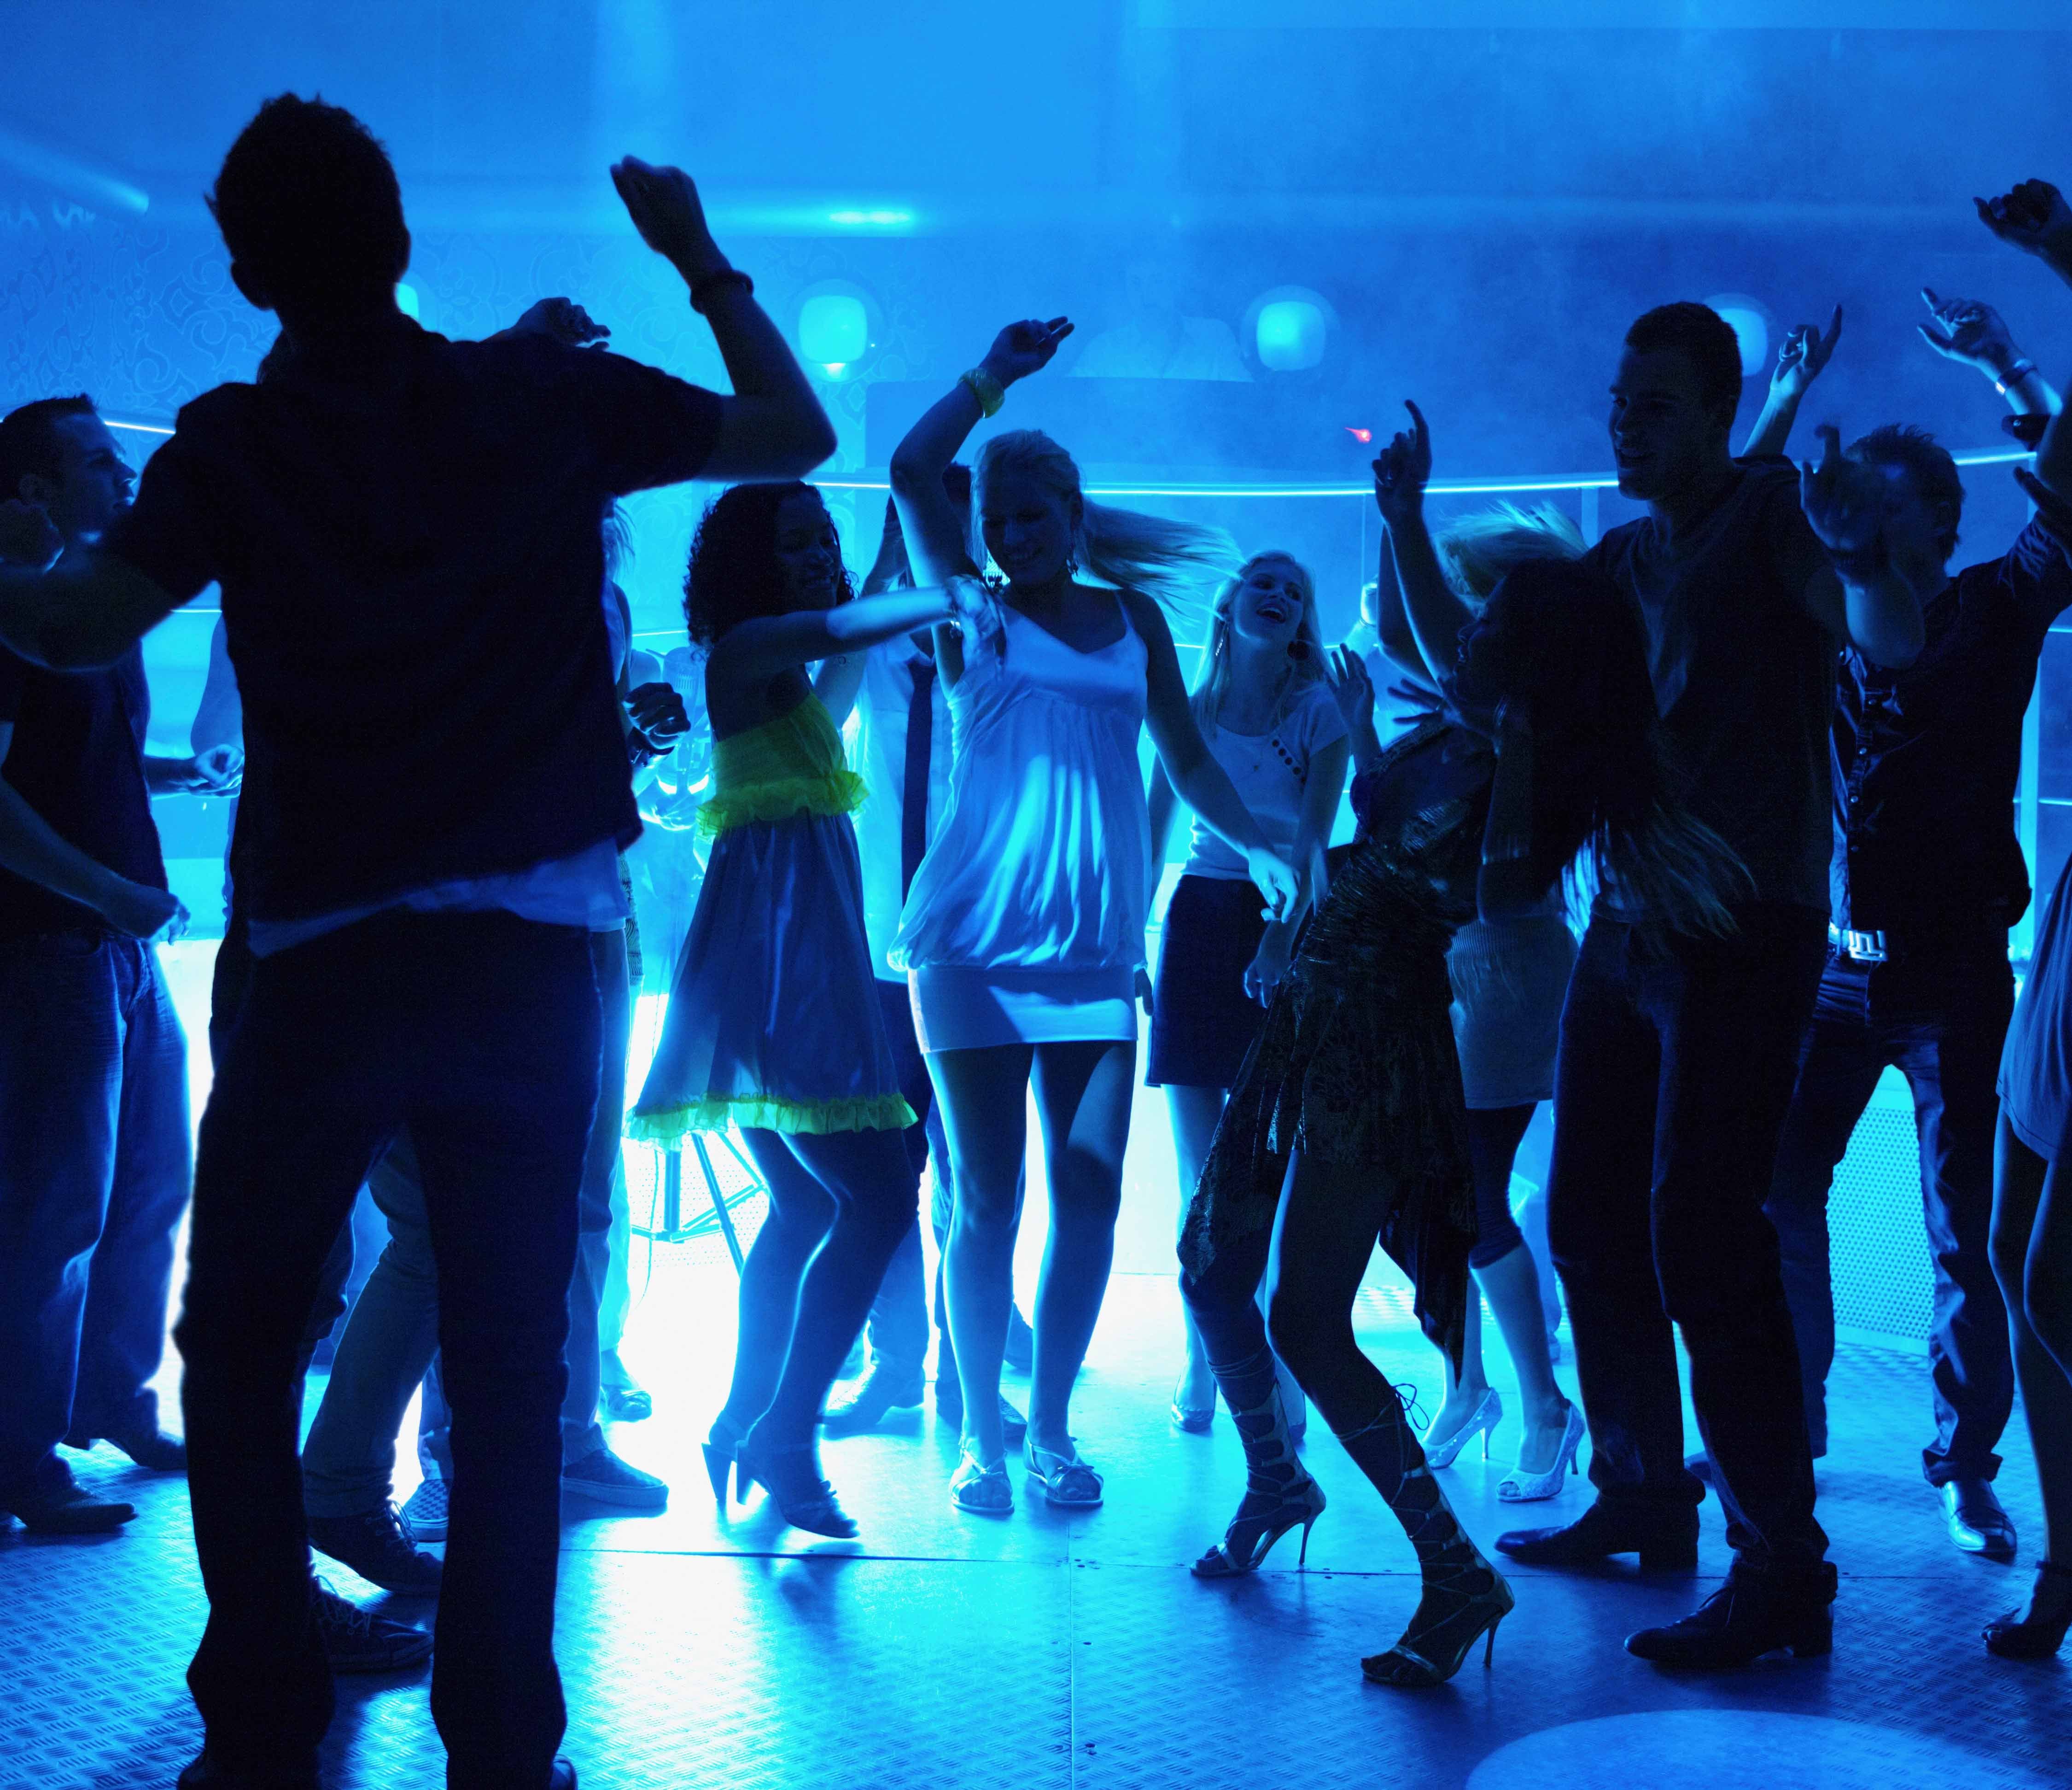 Ночной клуб школа. Ночная дискотека. Клубные танцы. Танцы в клубе. Люди танцуют на дискотеке.